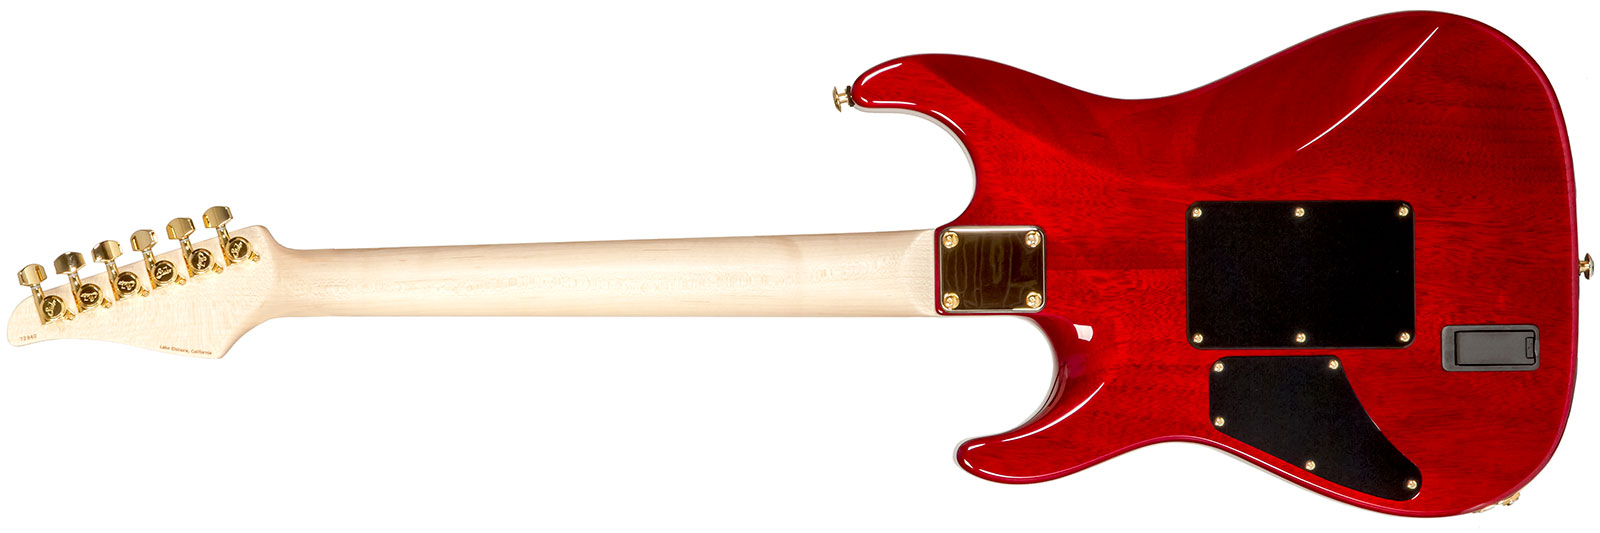 Suhr Standard Legacy 01-ltd-0030 Hss Emg Fr Rw #72940 - Aged Cherry Burst - Elektrische gitaar in Str-vorm - Variation 1